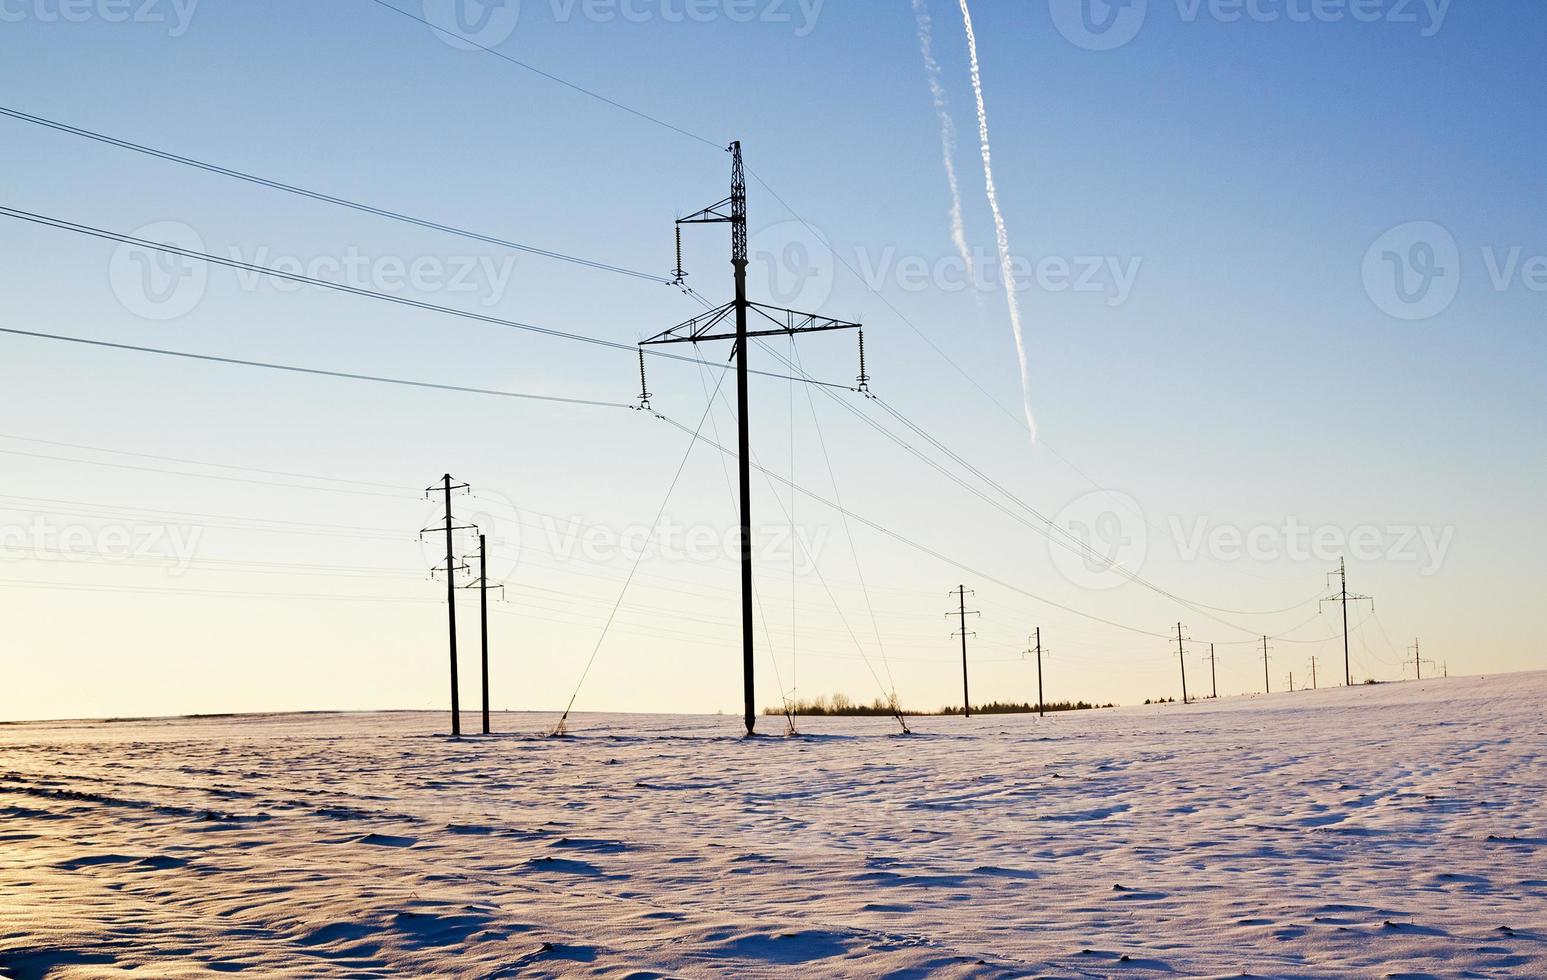 kolumner i fält - de elektriska kolonnerna som står i fältet. vinter. foto